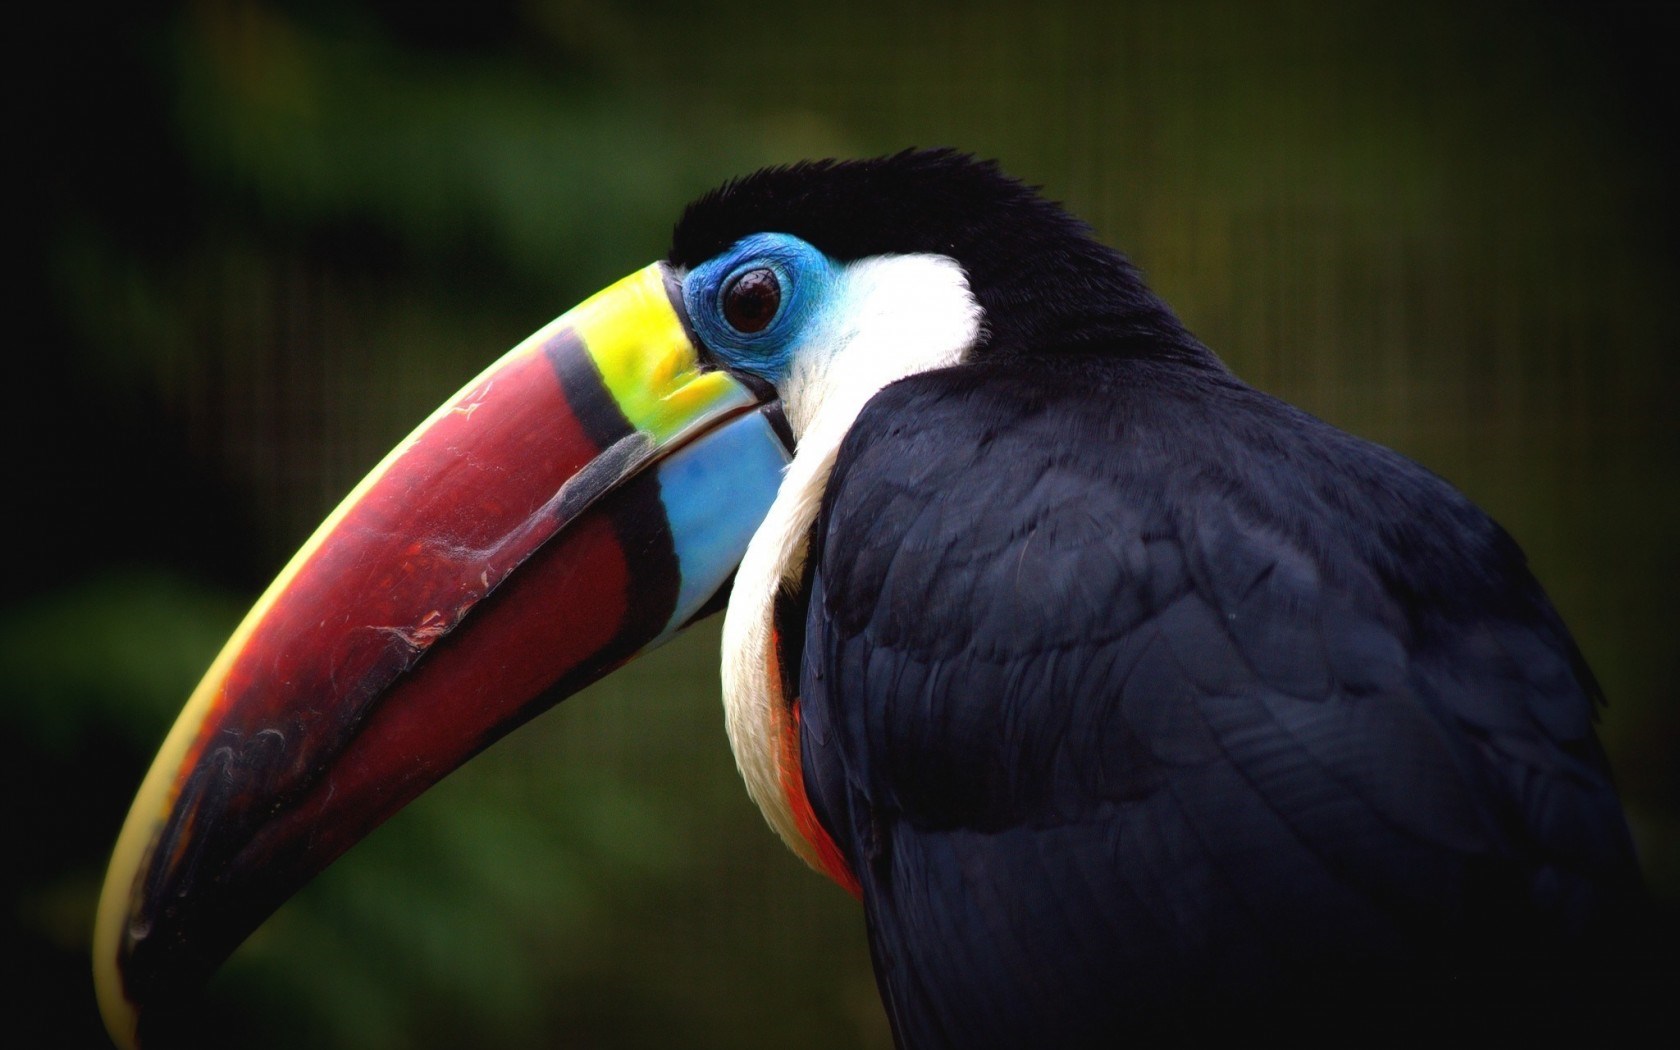 toucan beak images